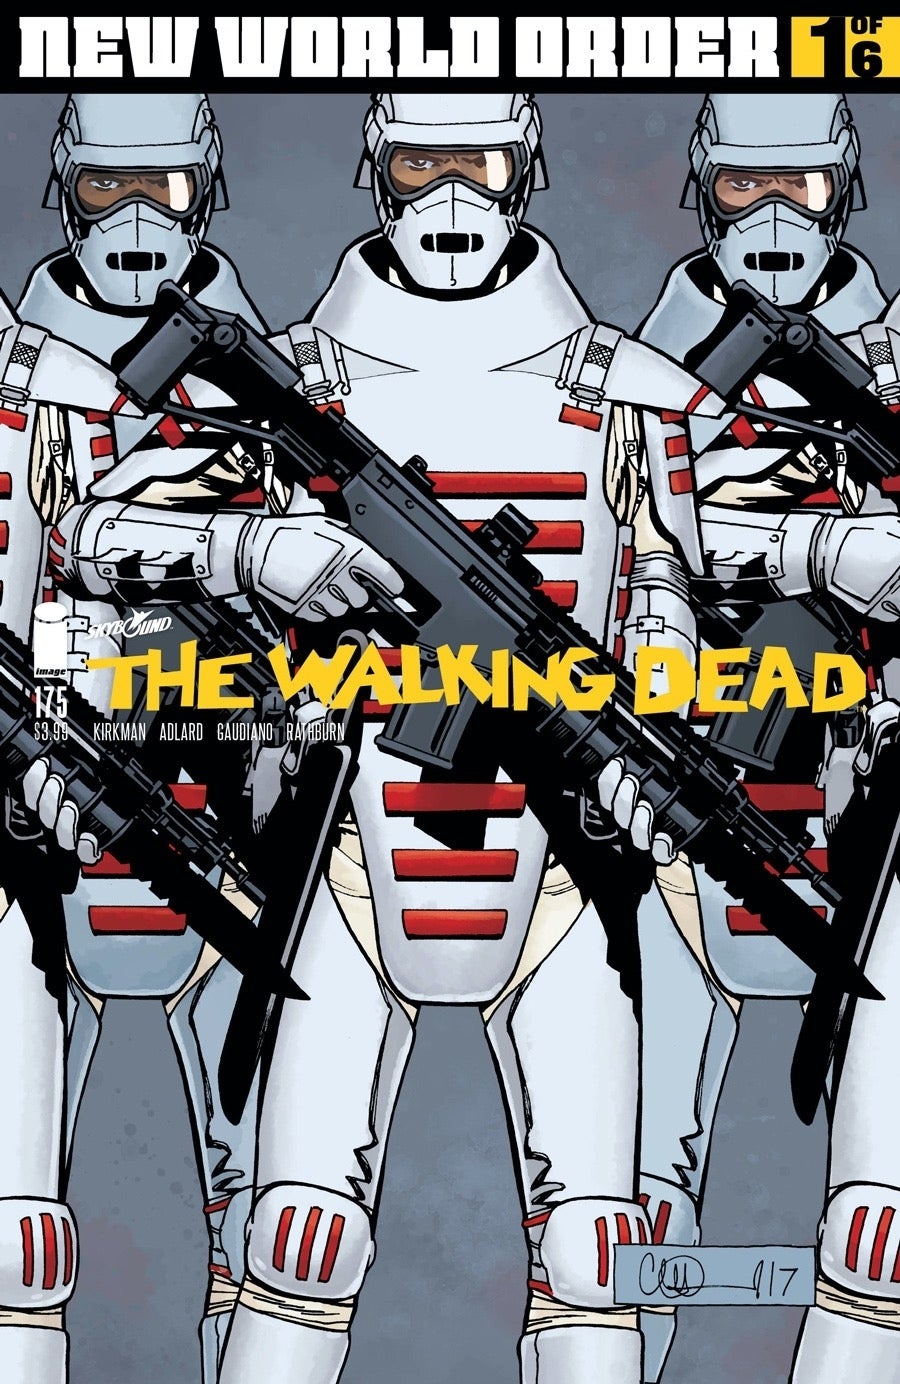 The Walking Dead, número 175 del ejército de la Commonwealth